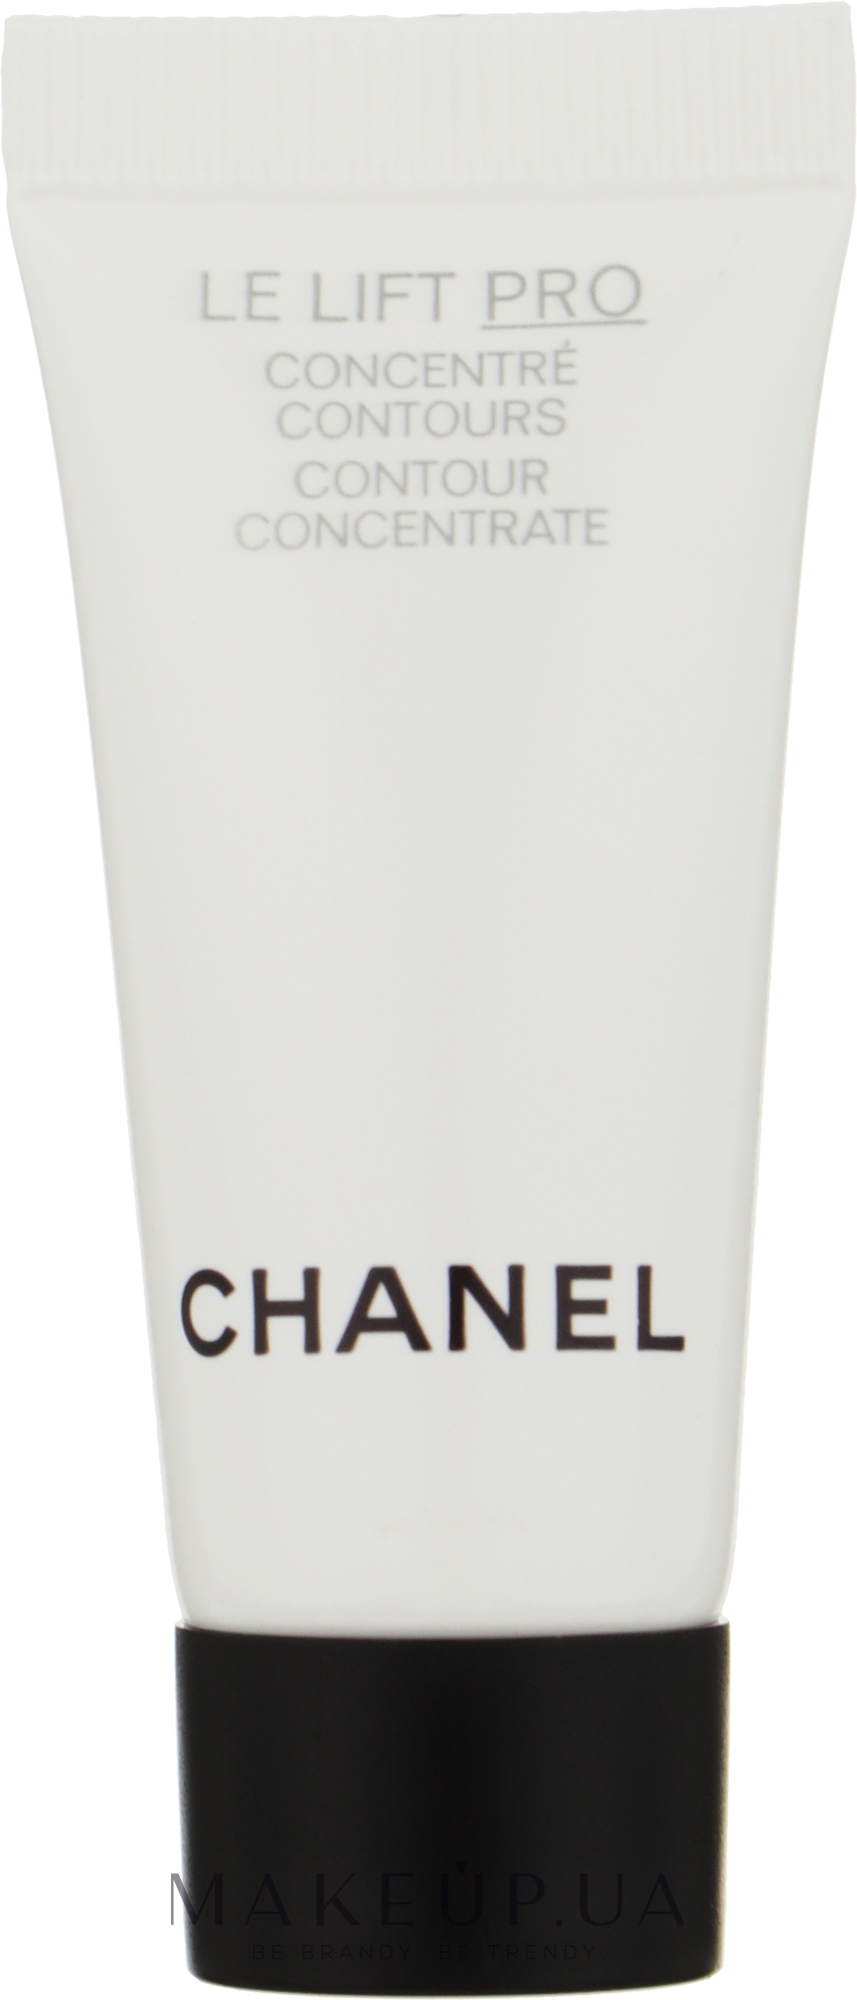 Chanel Le Lift Pro Concentre Contours (мини) - Моделирующий концентрат для  лица: купить по лучшей цене в Украине